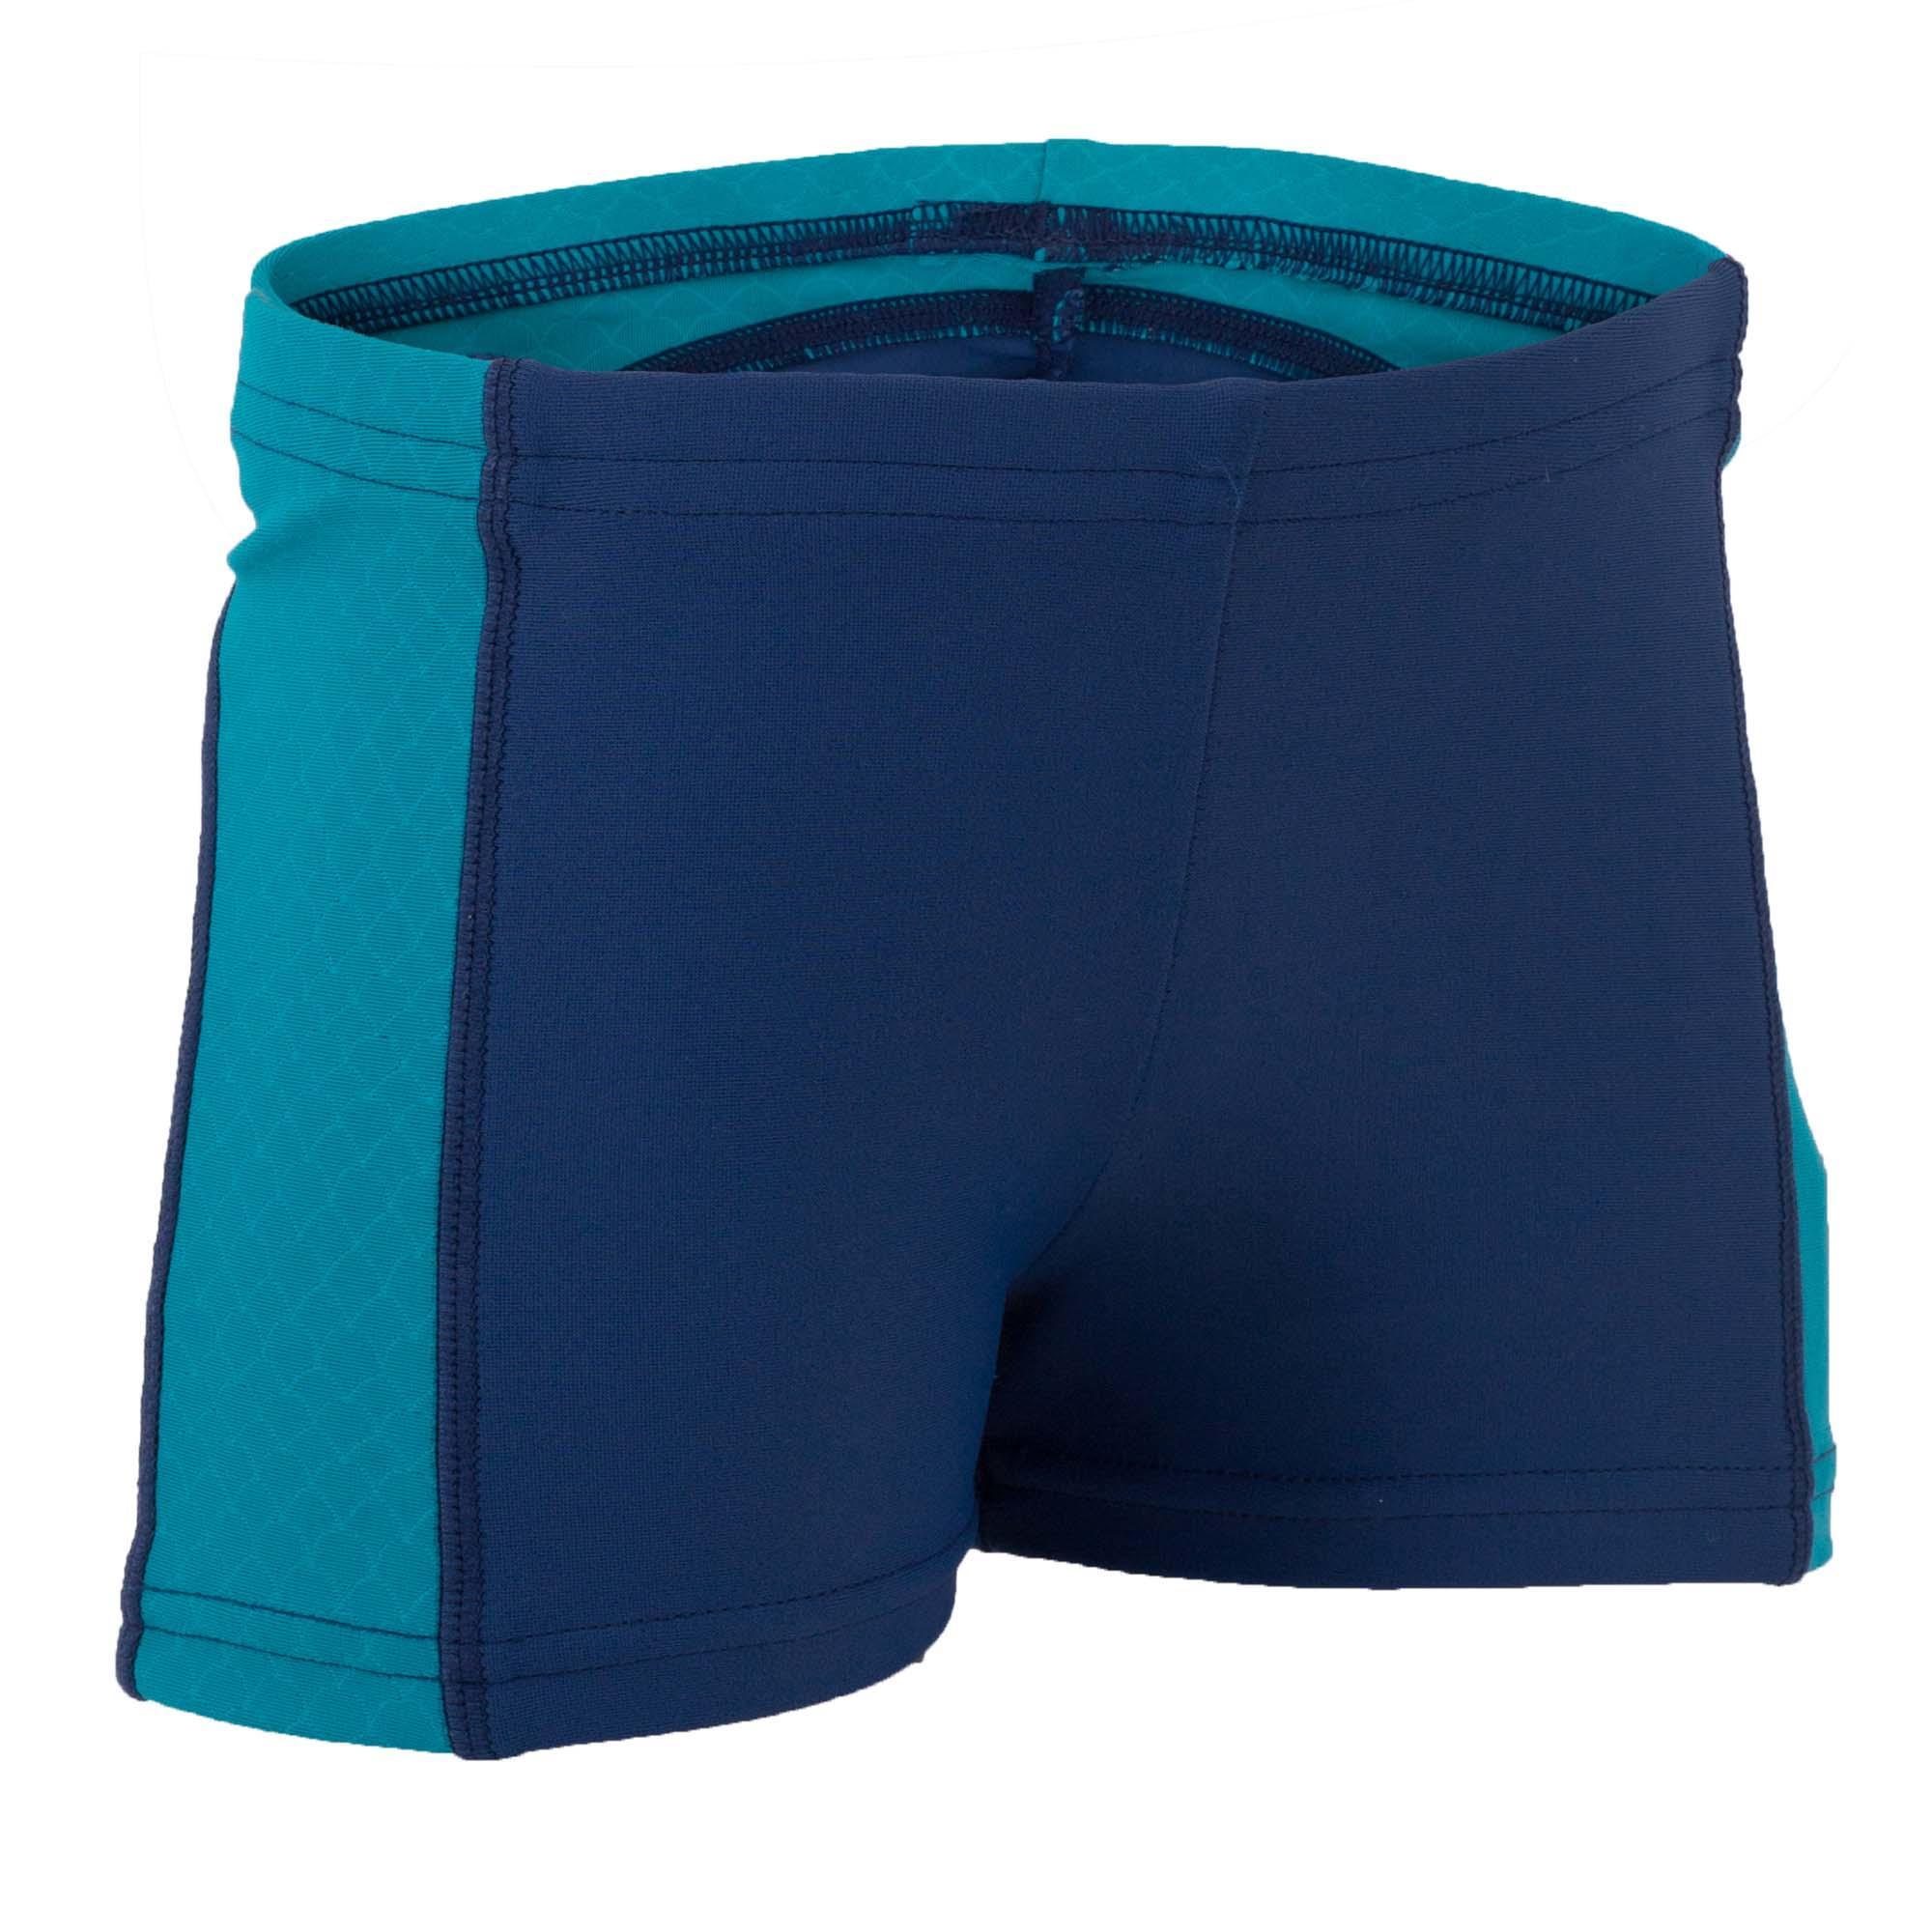 [ด่วน!! โปรโมชั่นมีจำนวนจำกัด] กางเกงว่ายน้ำแบบบ็อกเซอร์สำหรับเด็กเล็กพร้อมผ้าเสริม (สีน้ำเงิน) สำหรับ ว่ายน้ำ